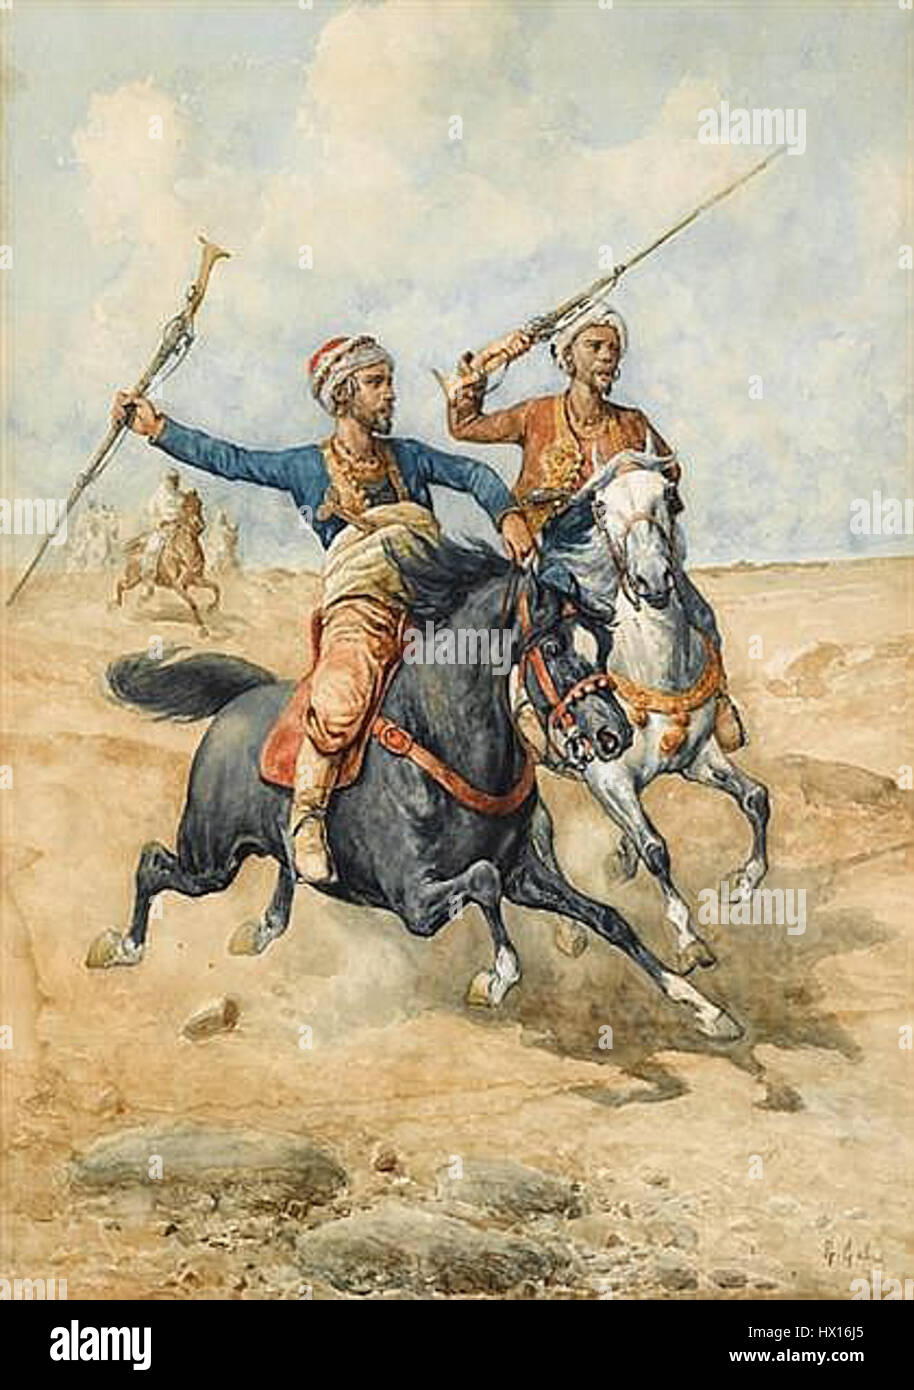 Gabani giuseppe 1846 1900 ital arab horsemen Stock Photo